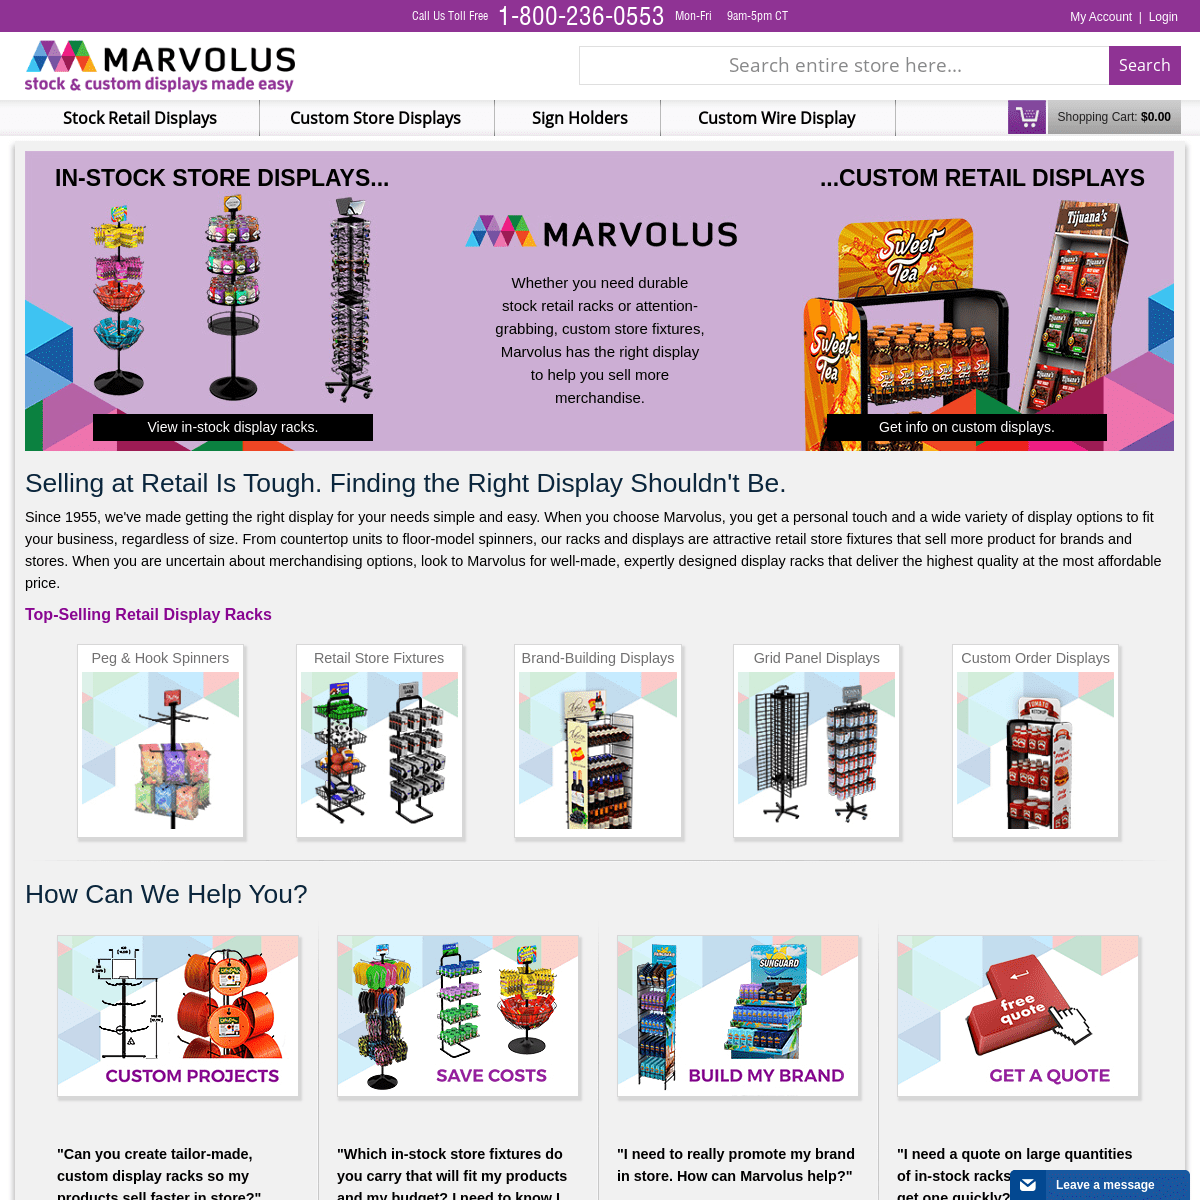 A complete backup of marvolus.com